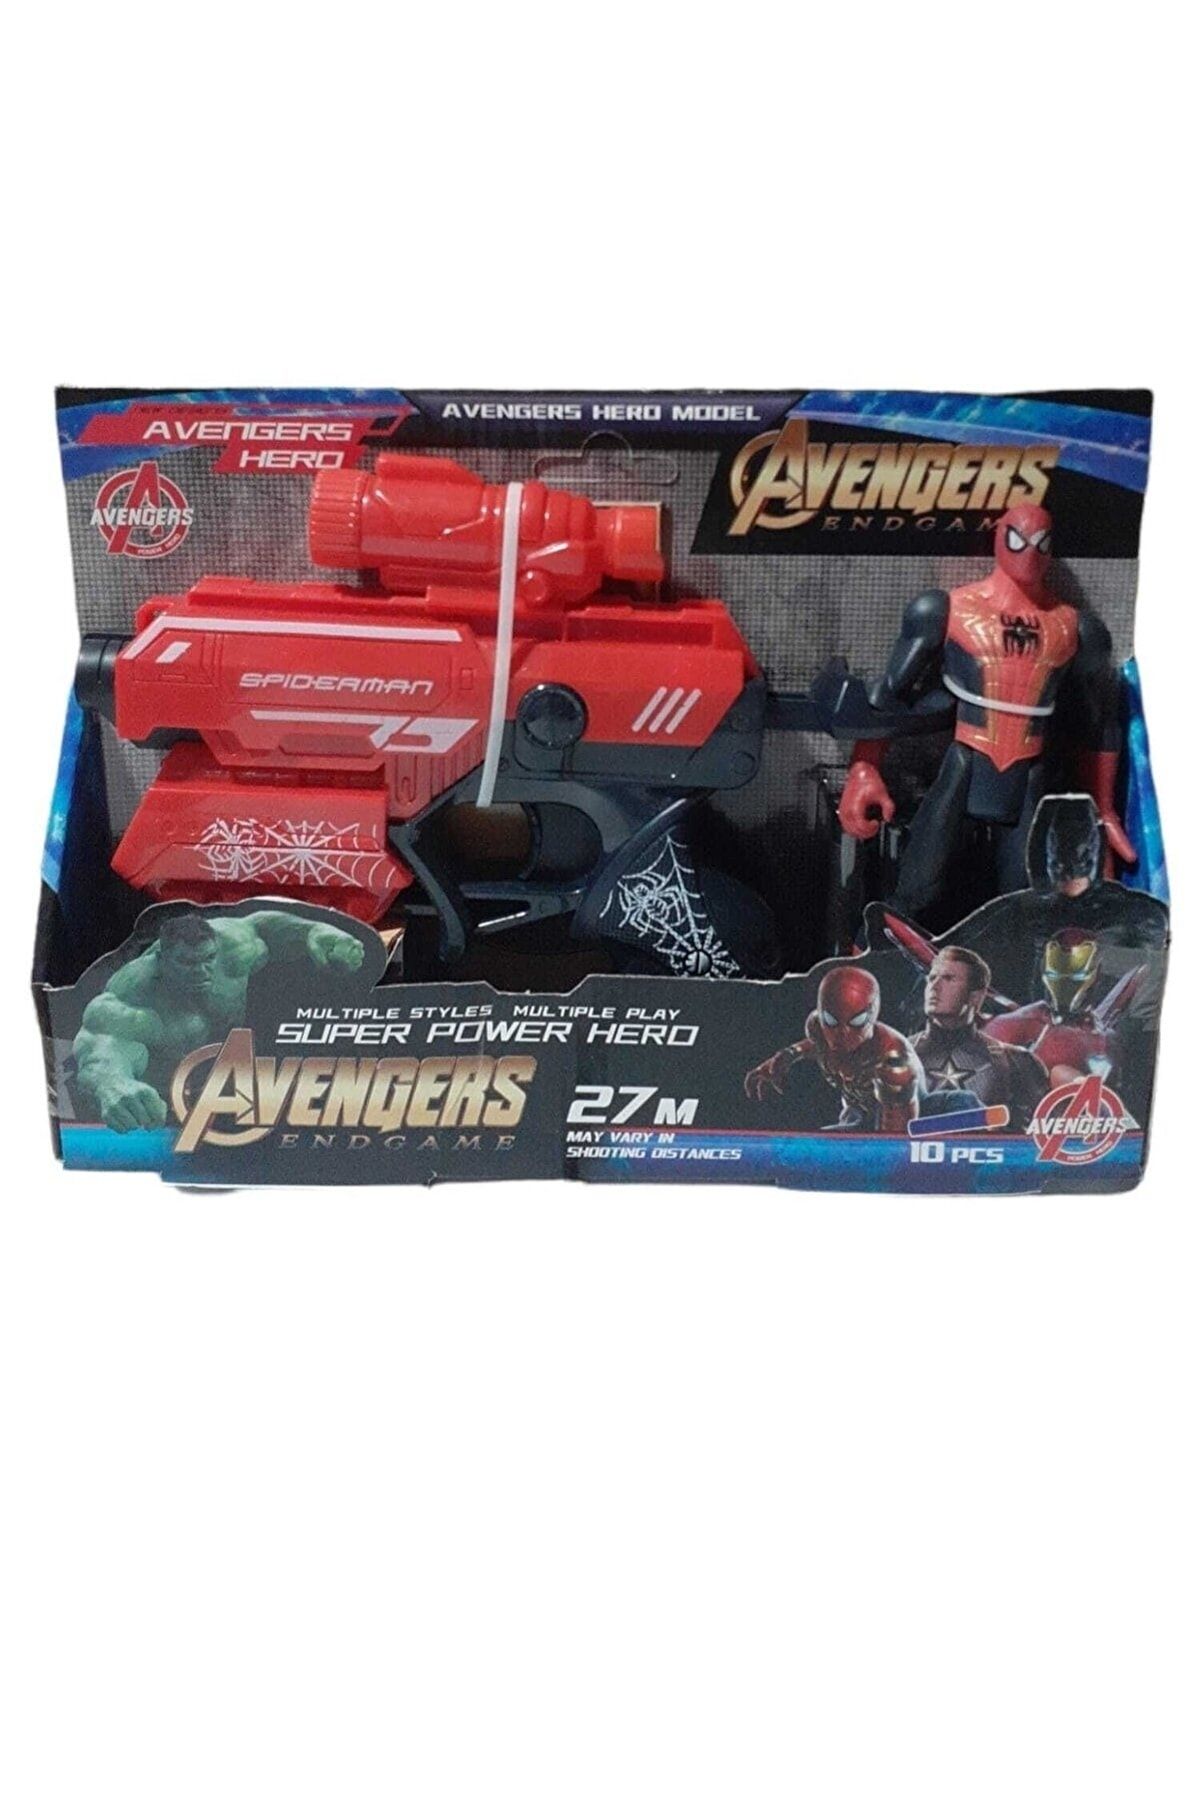 Brother Toys Nerf Benzeri Sünger Mermi Atan Lazerli Dürbünlü Tabanca Ve Işıklı Avengers Spiderman Figürü